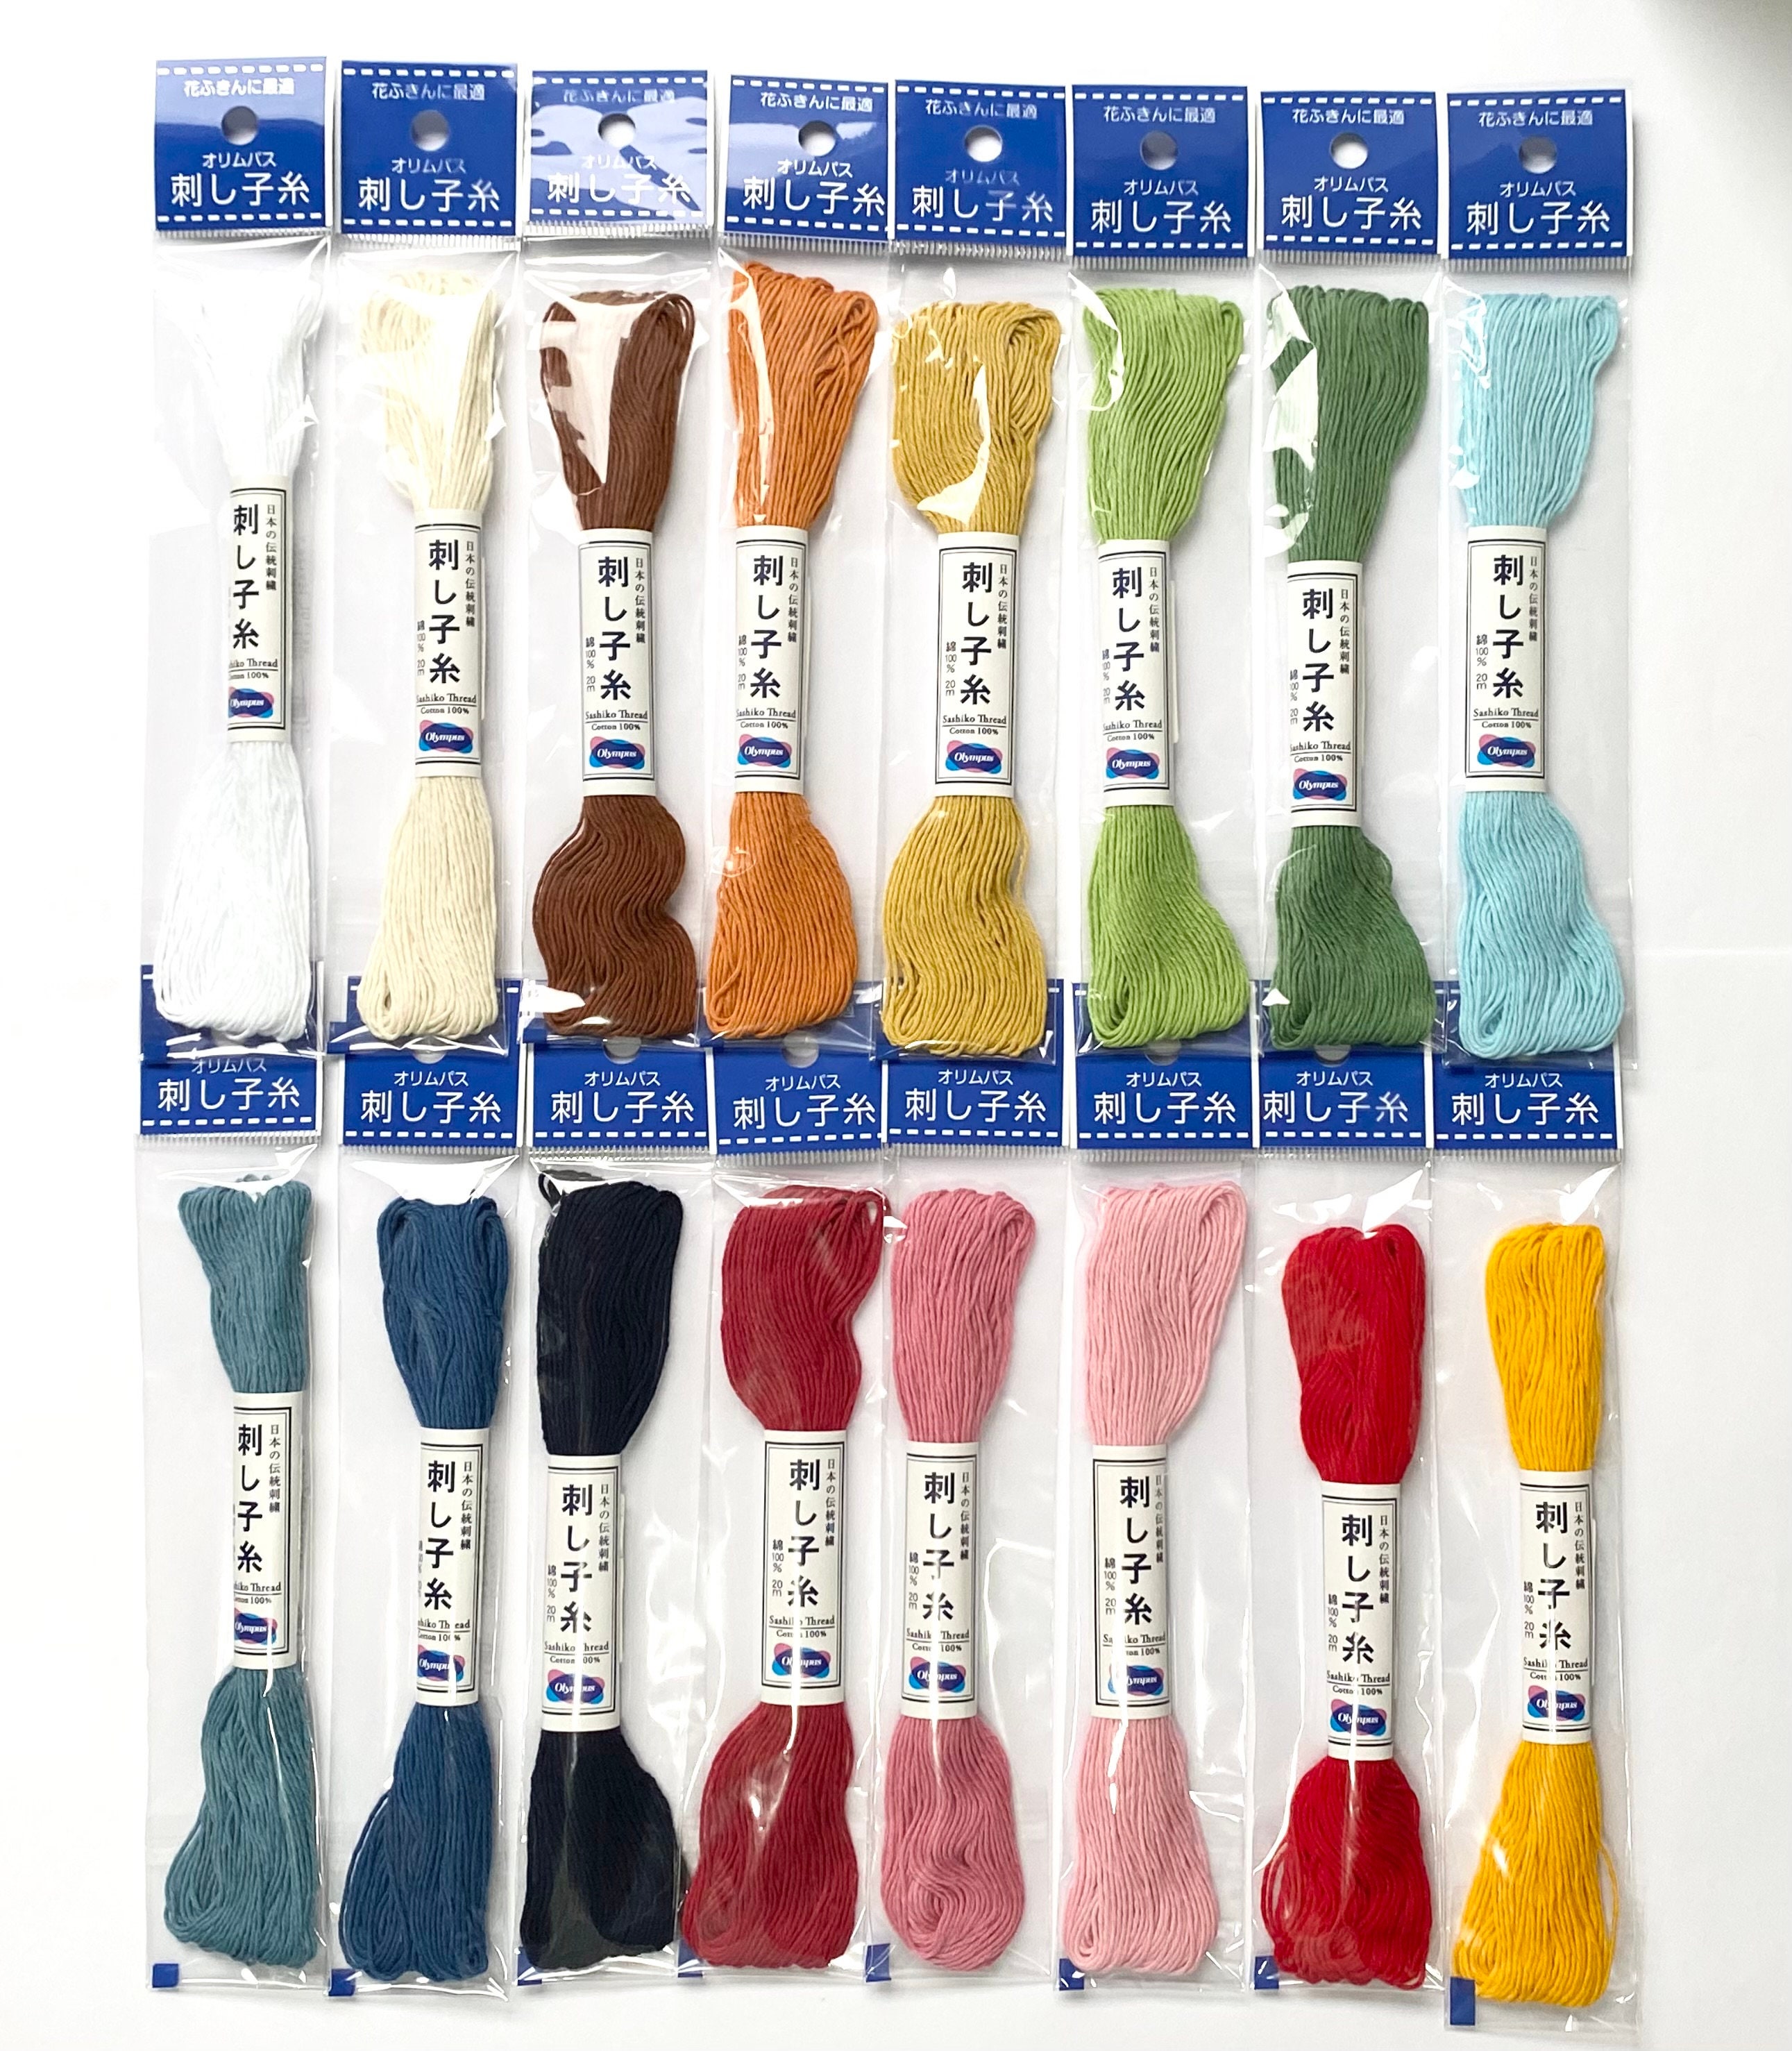 Olymp Sashiko Starter Bundle - 12 Skeins of Olympus Sashiko Thread, 2 Sashiko Needles, and A Leather Sashiko Thimble